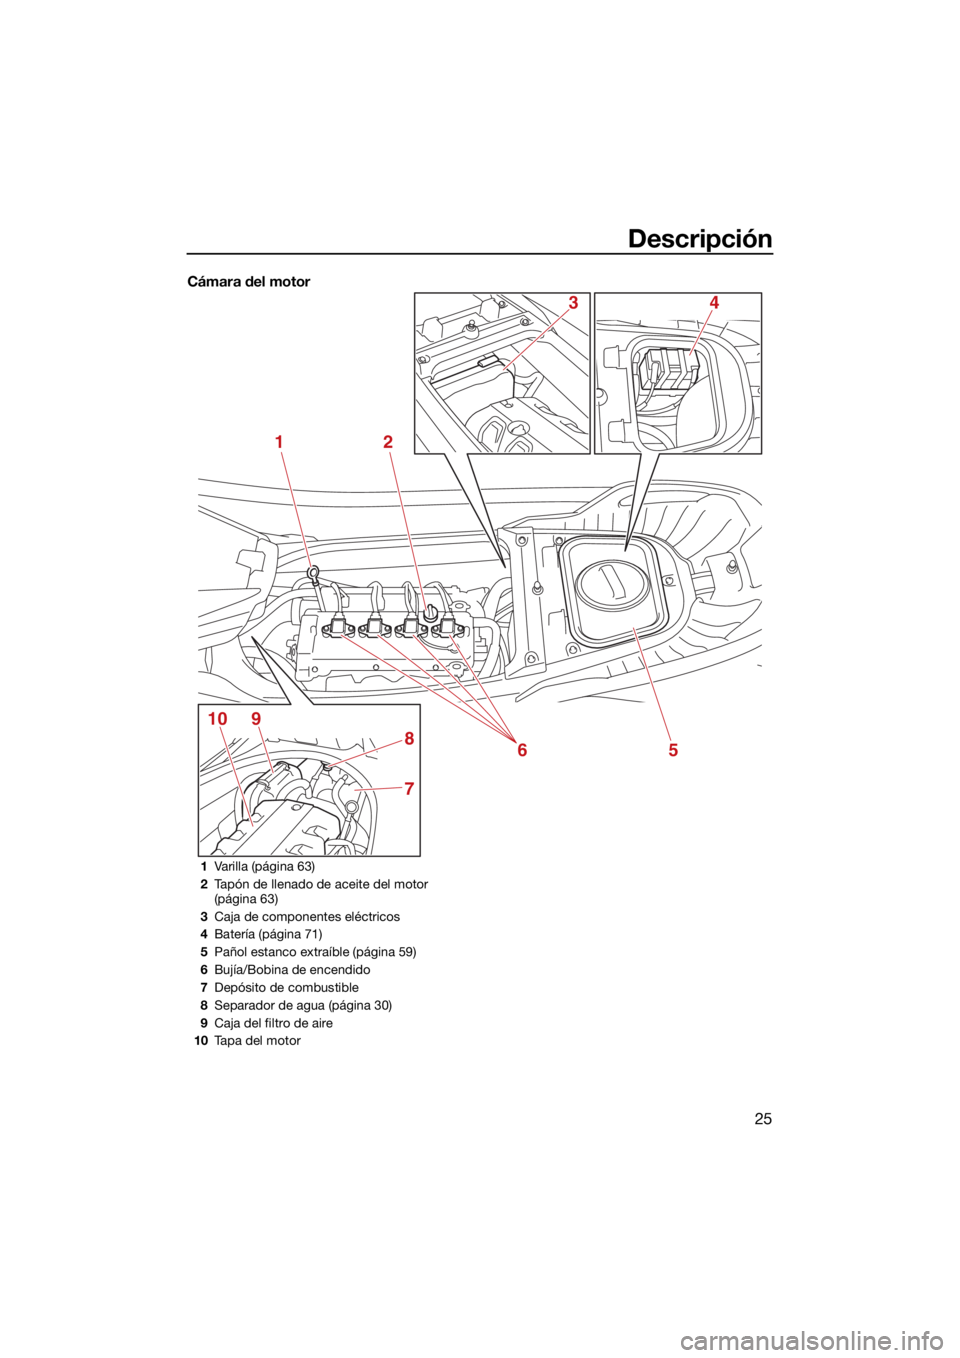 YAMAHA FX HO CRUISER 2021  Manuale de Empleo (in Spanish) Descripción
25
Cámara del motor
12
5
7
8
9106
43
1Varilla (página 63)
2 Tapón de llenado de aceite del motor 
(página 63)
3 Caja de componentes eléctricos
4 Batería (página 71)
5 Pañol estanc